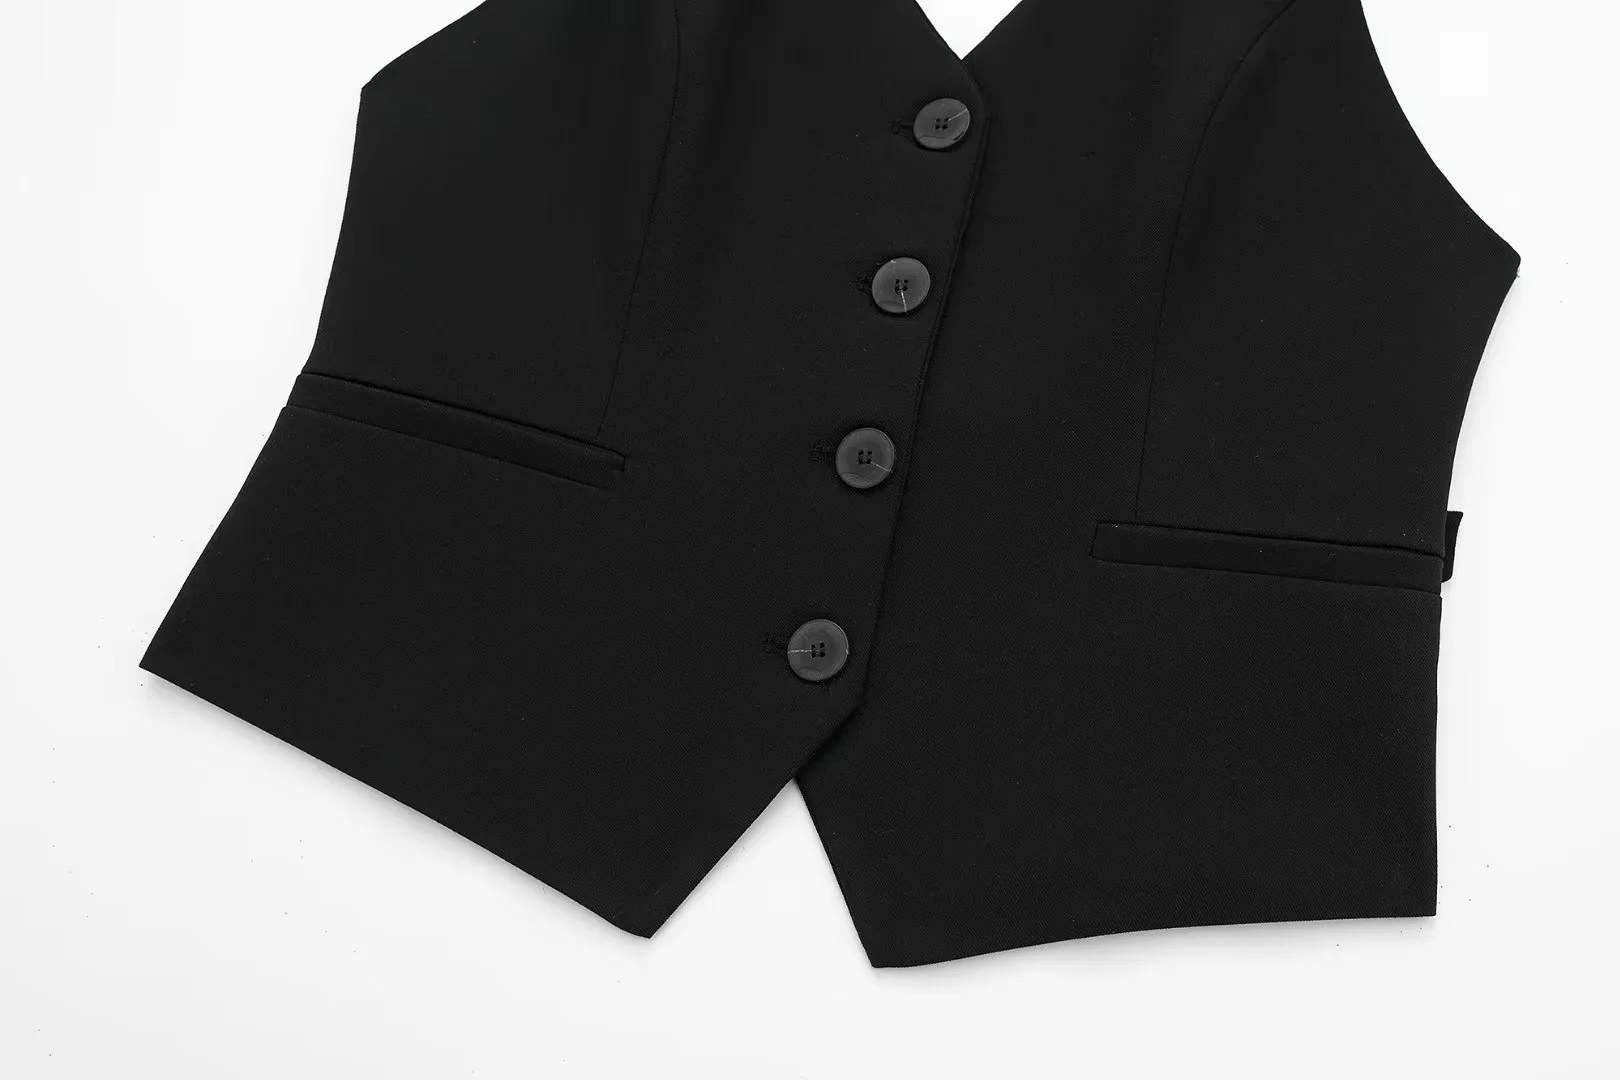 Fashion Black Blended Hollow Halter-breasted Vest,Coat-Jacket